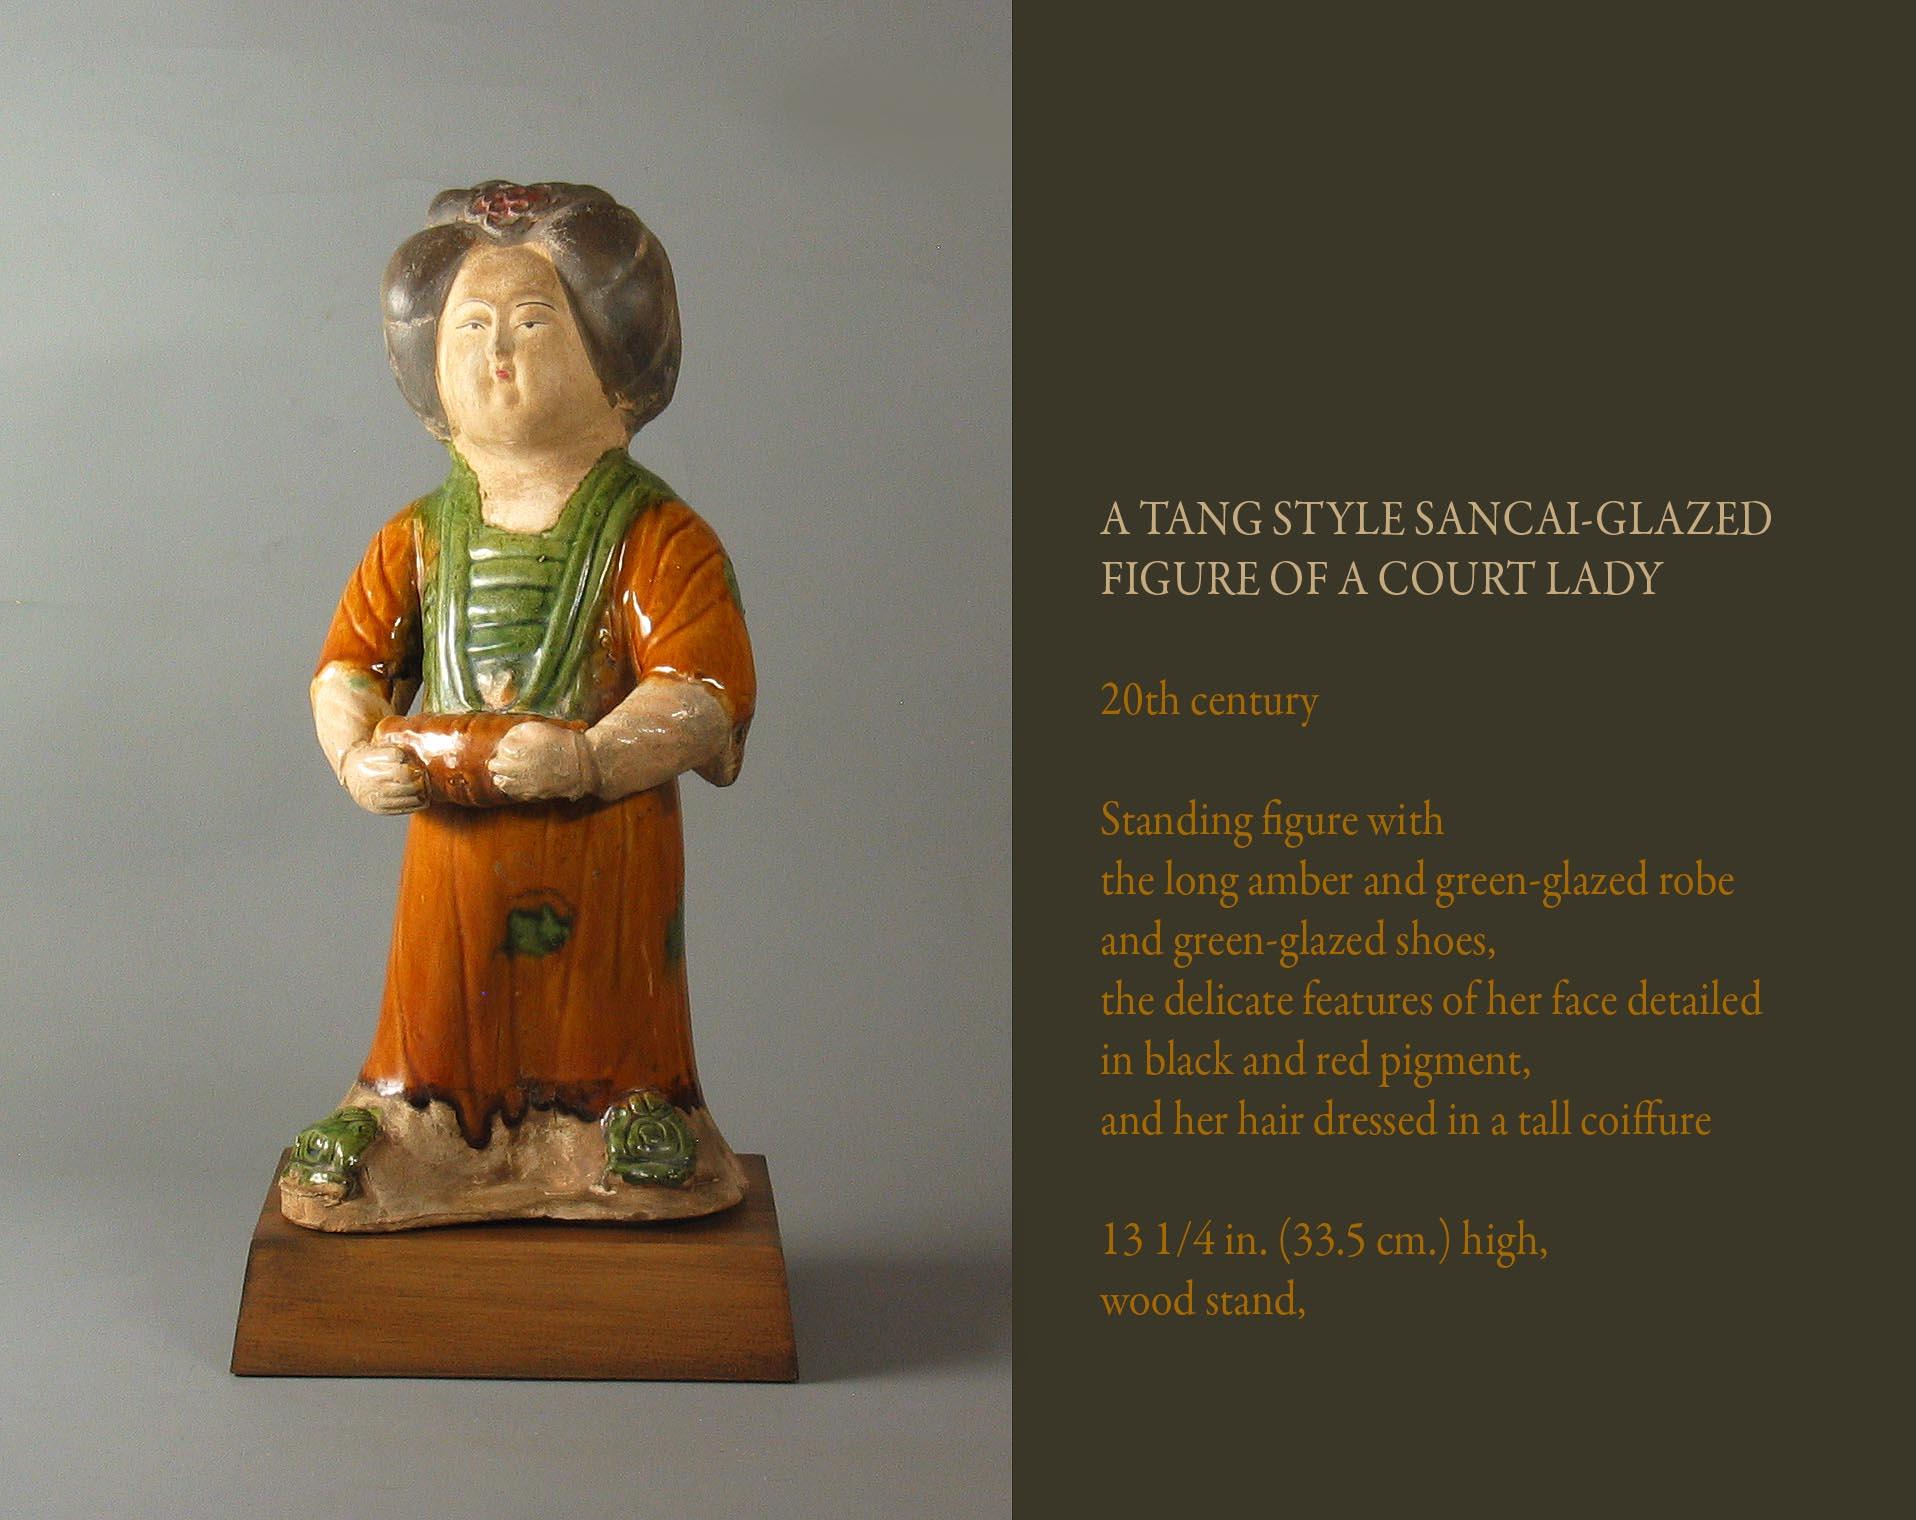 Un style Tang Sancai-glacé
Figure d'une dame de la cour,

20ème siècle.

Figure debout avec 
la longue robe d'ambre et de vert glacé 
et des chaussures à vernis vert, 
les traits délicats de son visage détaillés 
en pigment noir et rouge,